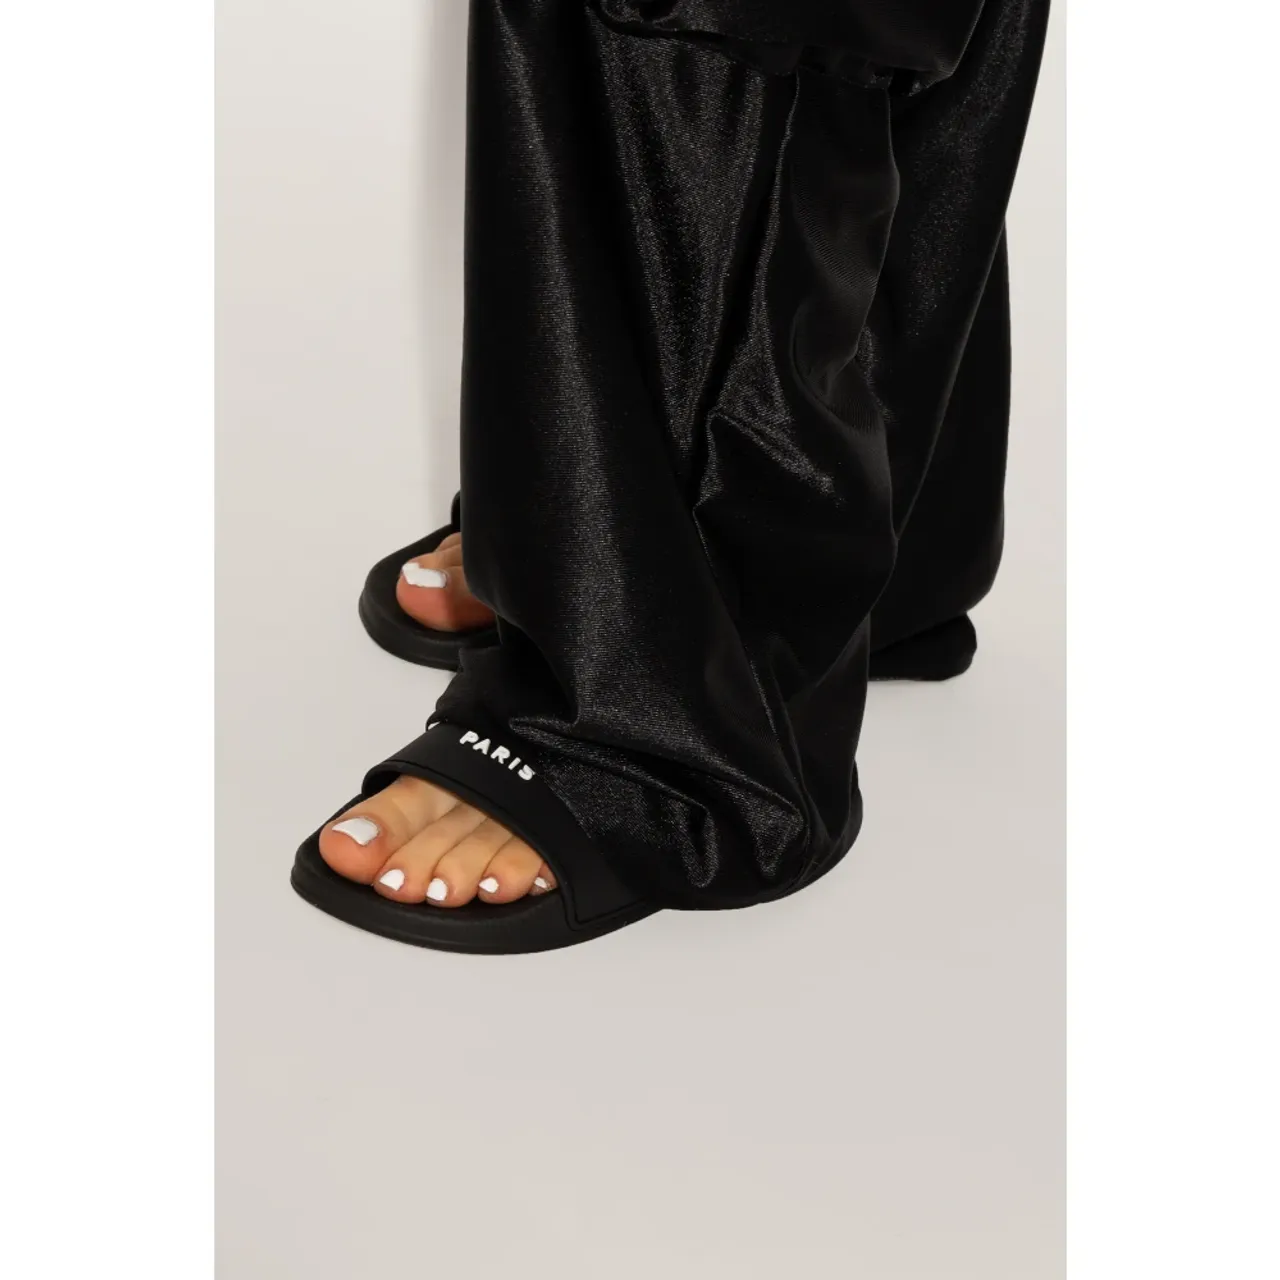 Givenchy , Slides with logo ,Black female, Sizes: